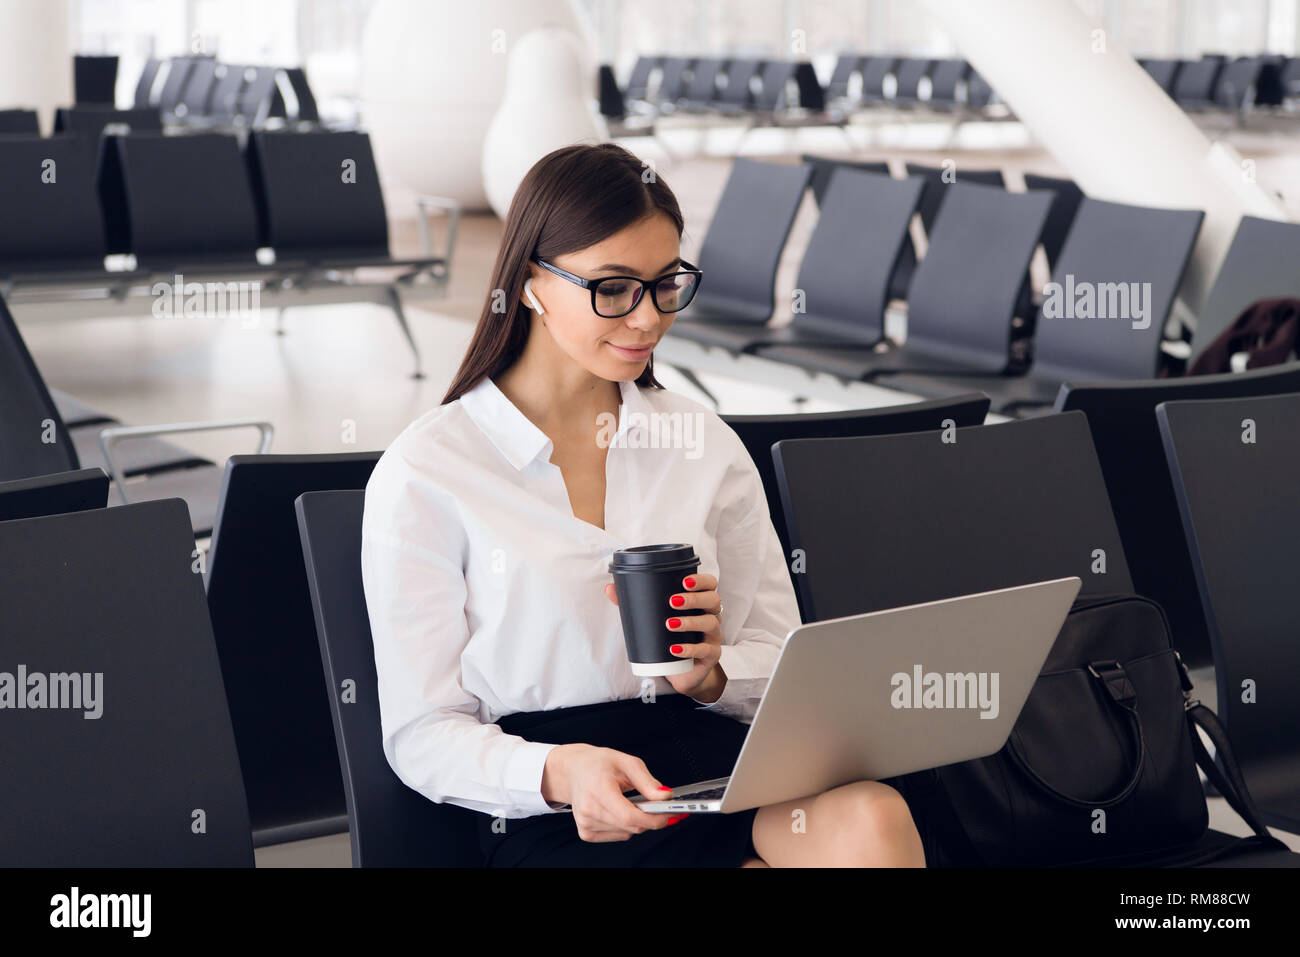 Elegante joven mujer de negocios en la terminal del aeropuerto internacional, trabajando en su ordenador portátil mientras esperando el vuelo Foto de stock